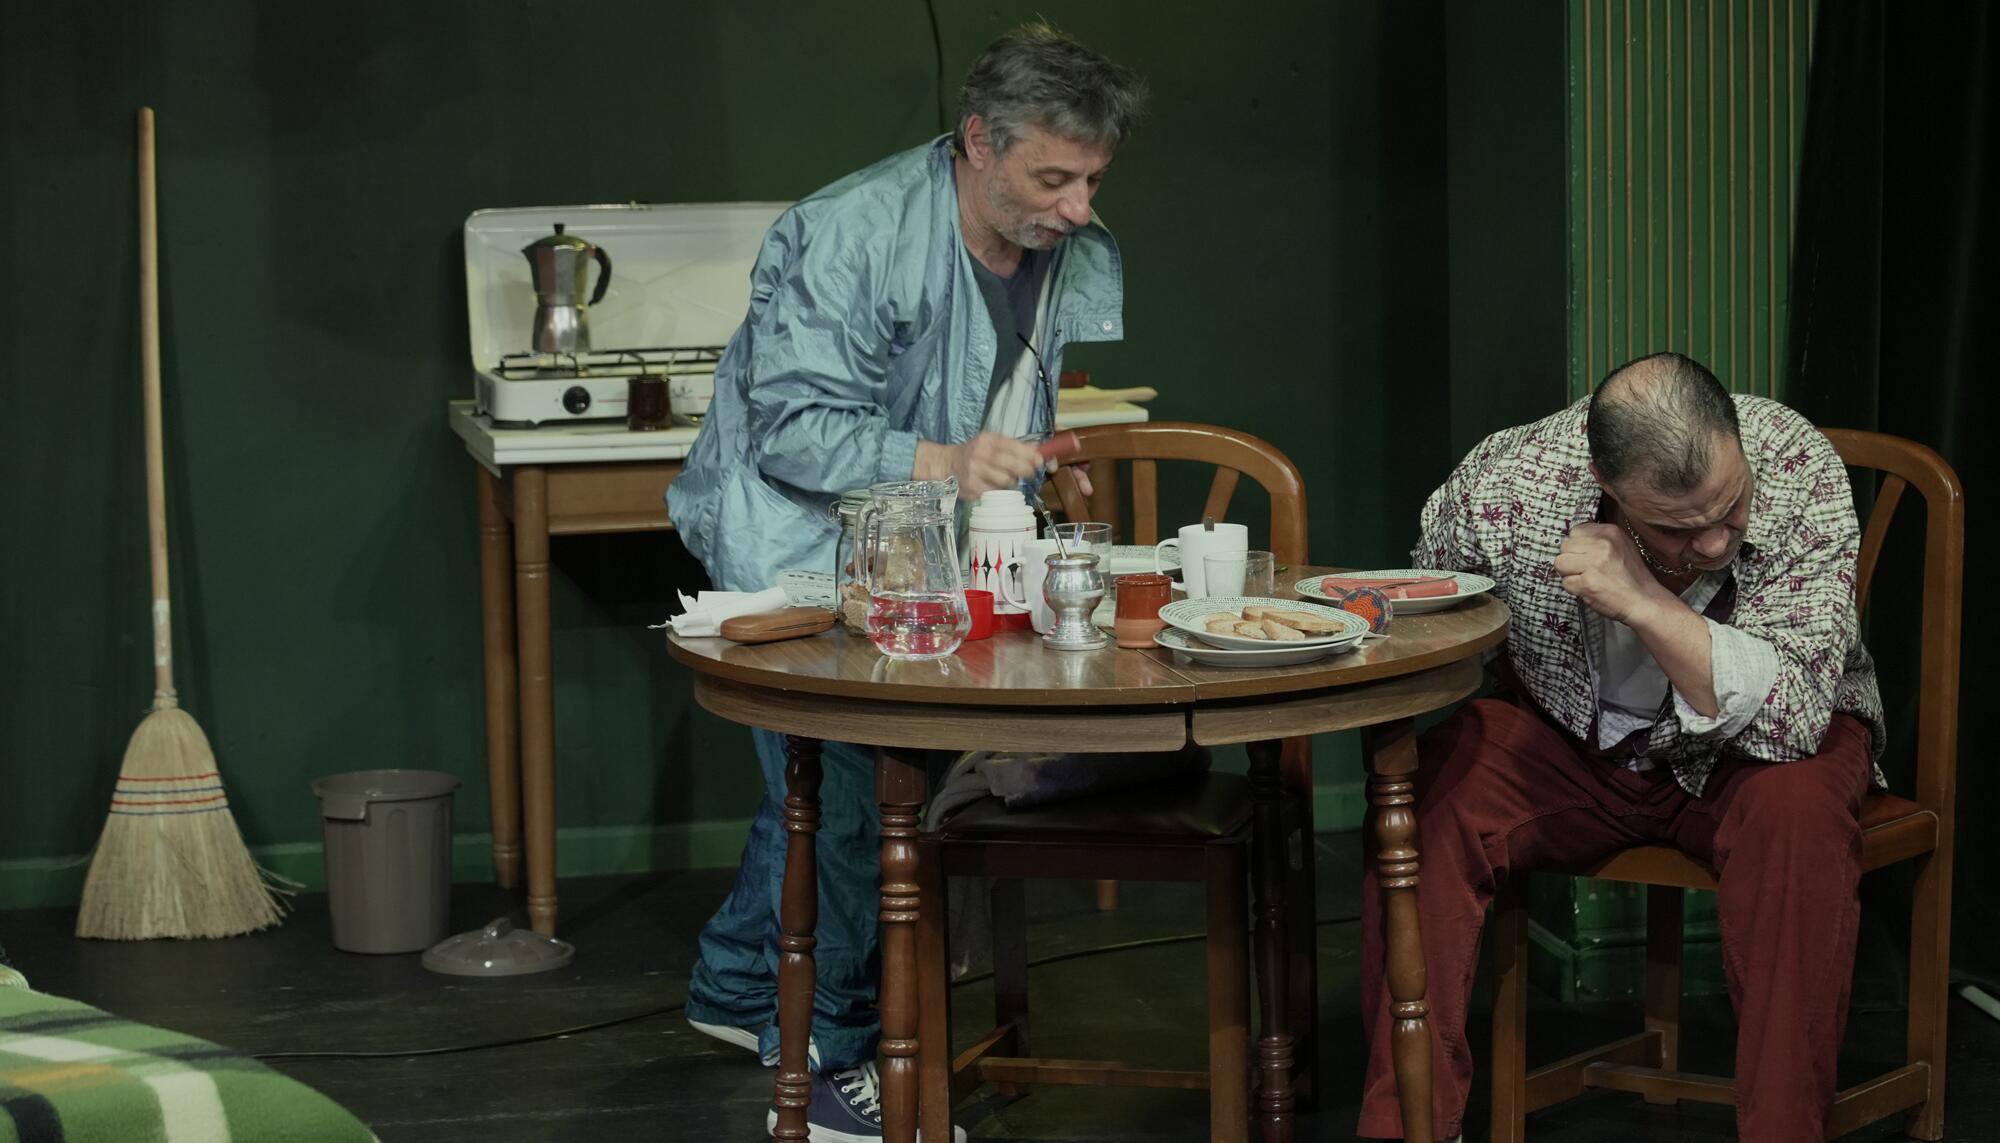 Una escena de la obra de teatro ‘Cámara lenta’, con los actores Patricio Rocco y Héctor Berna